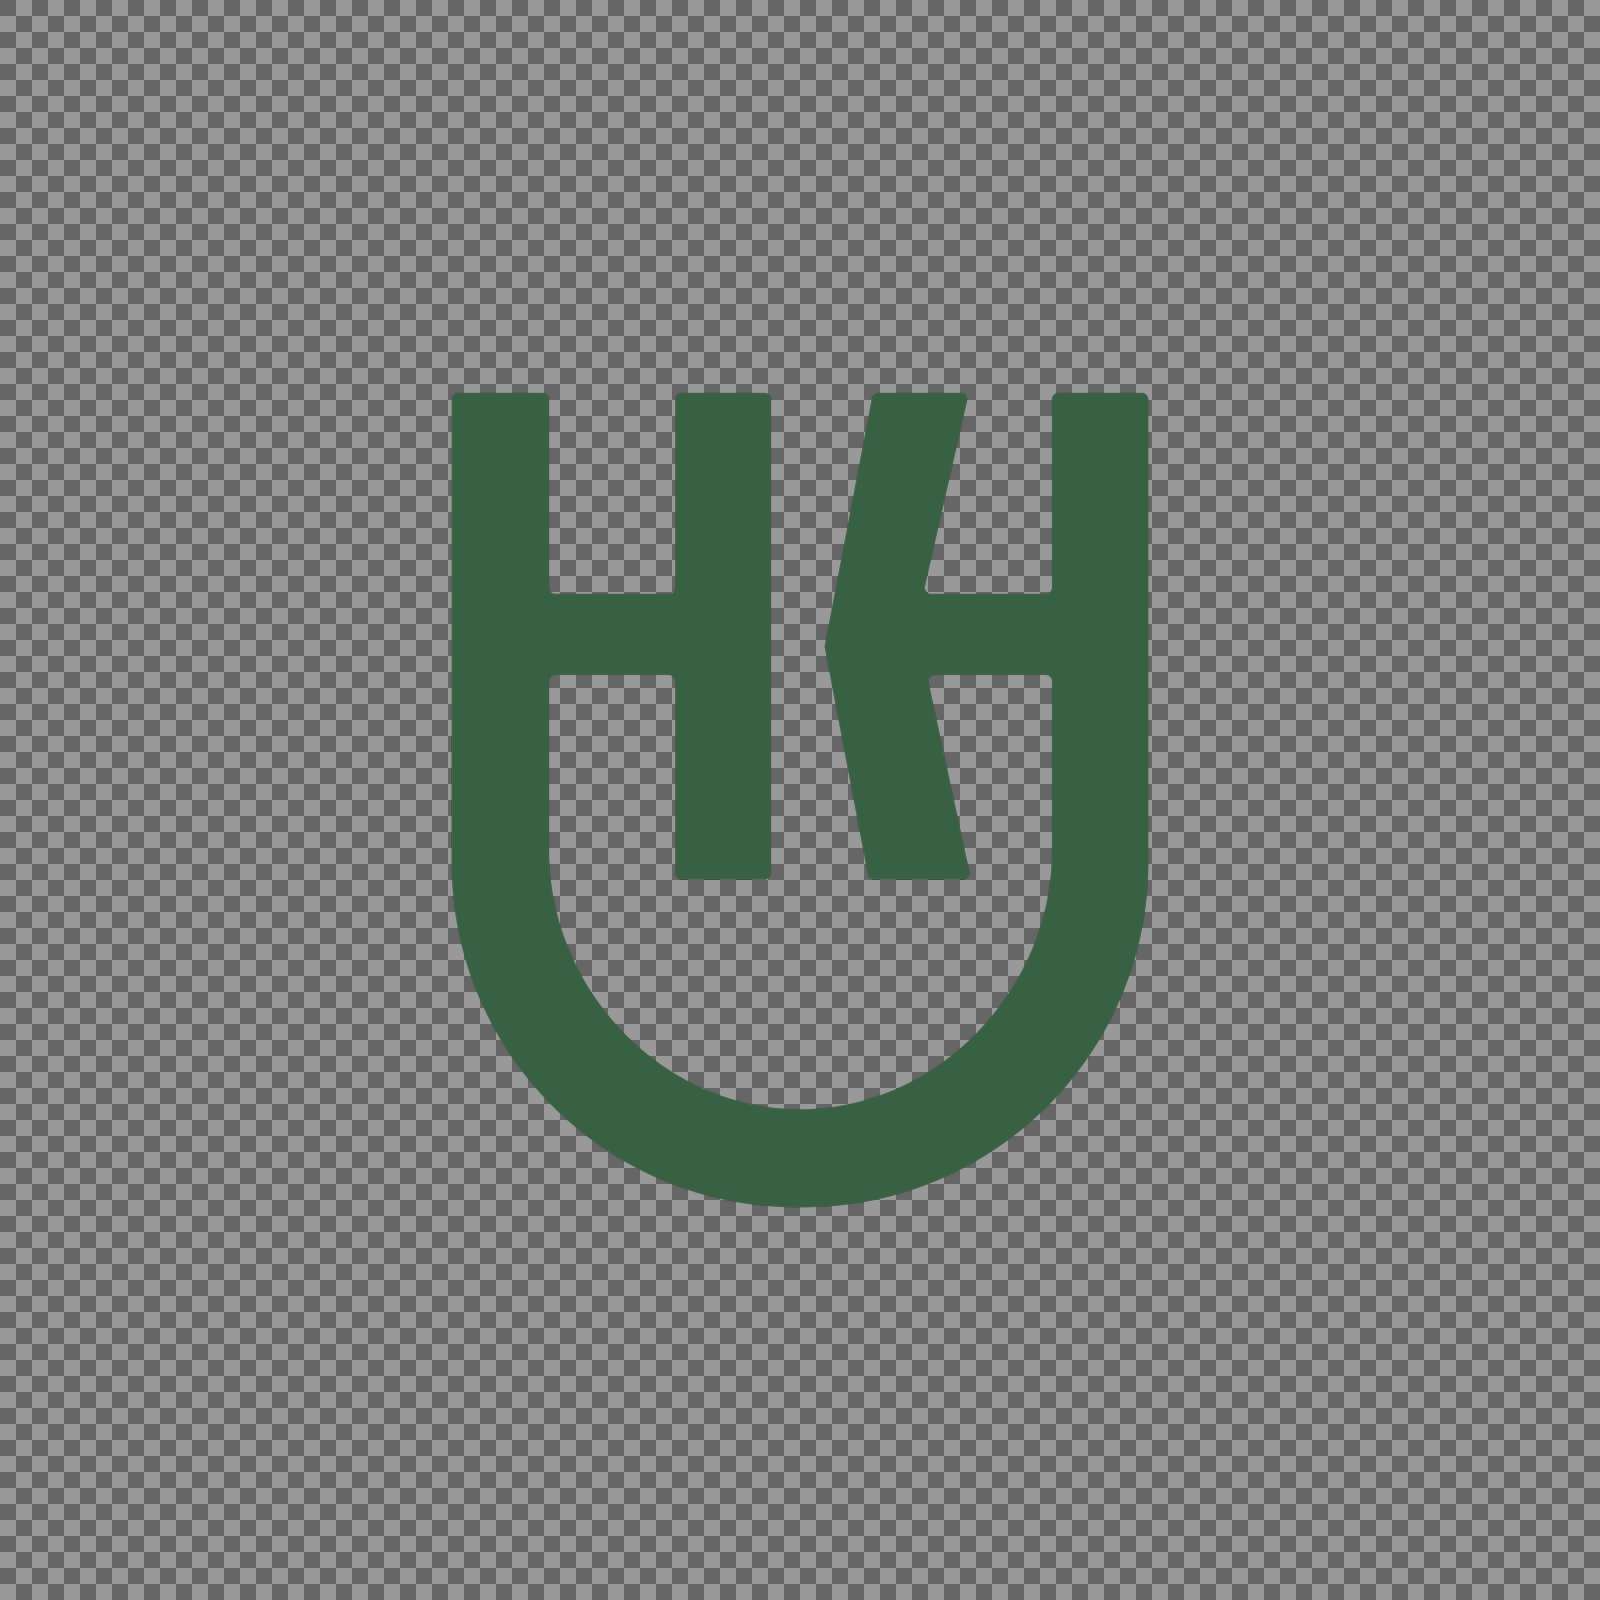 horsens logo symbol green transparent